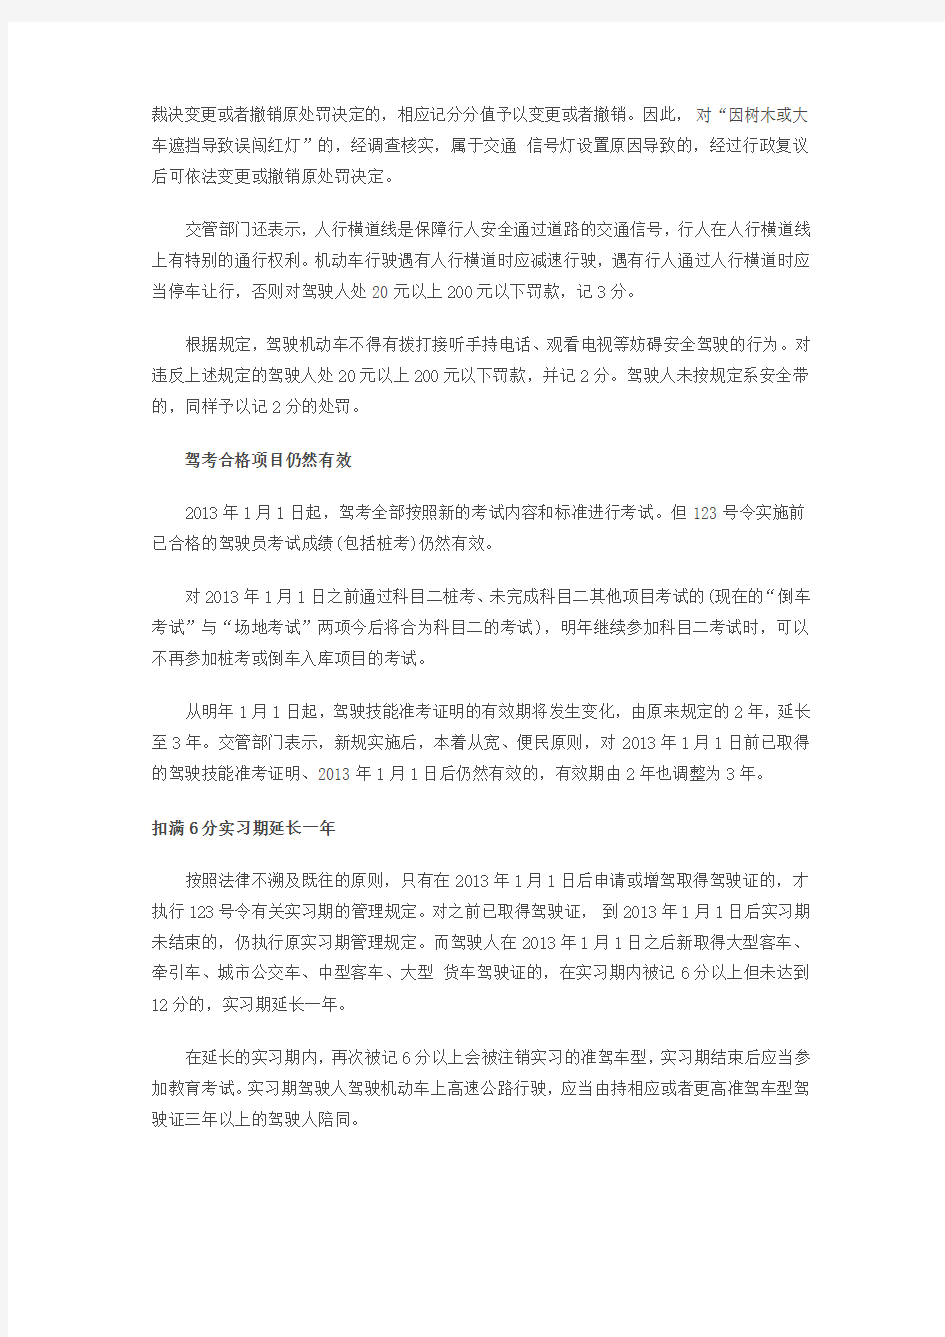 上海交警解读驾车新规抢黄灯与不避让校车都扣6分